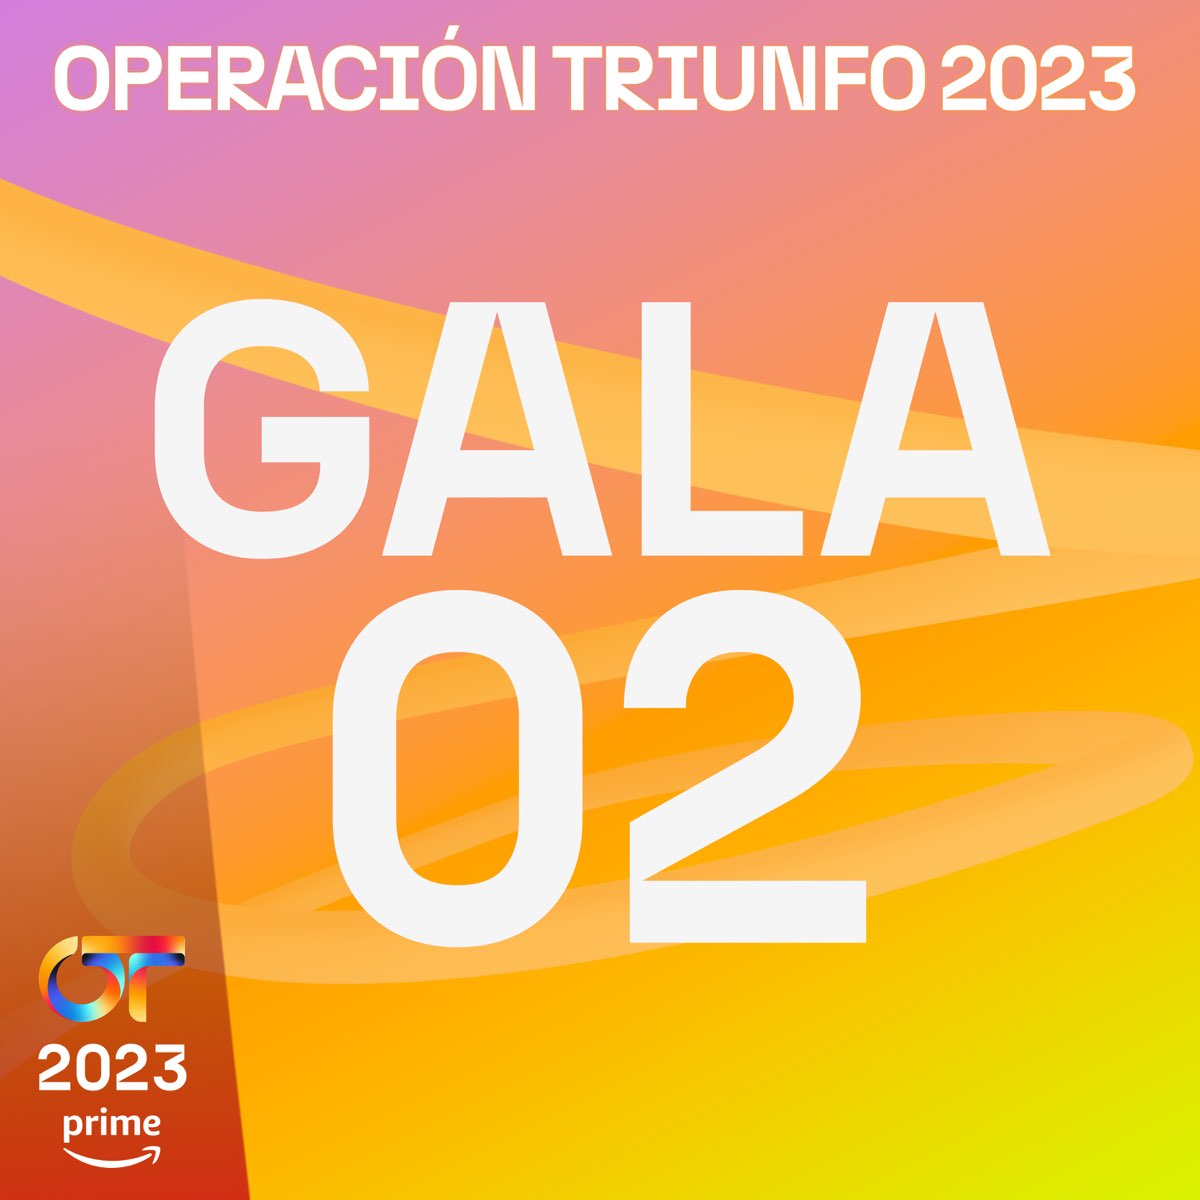 OT Gala 2 (Operación Triunfo 2023)” álbum de Varios Artistas en